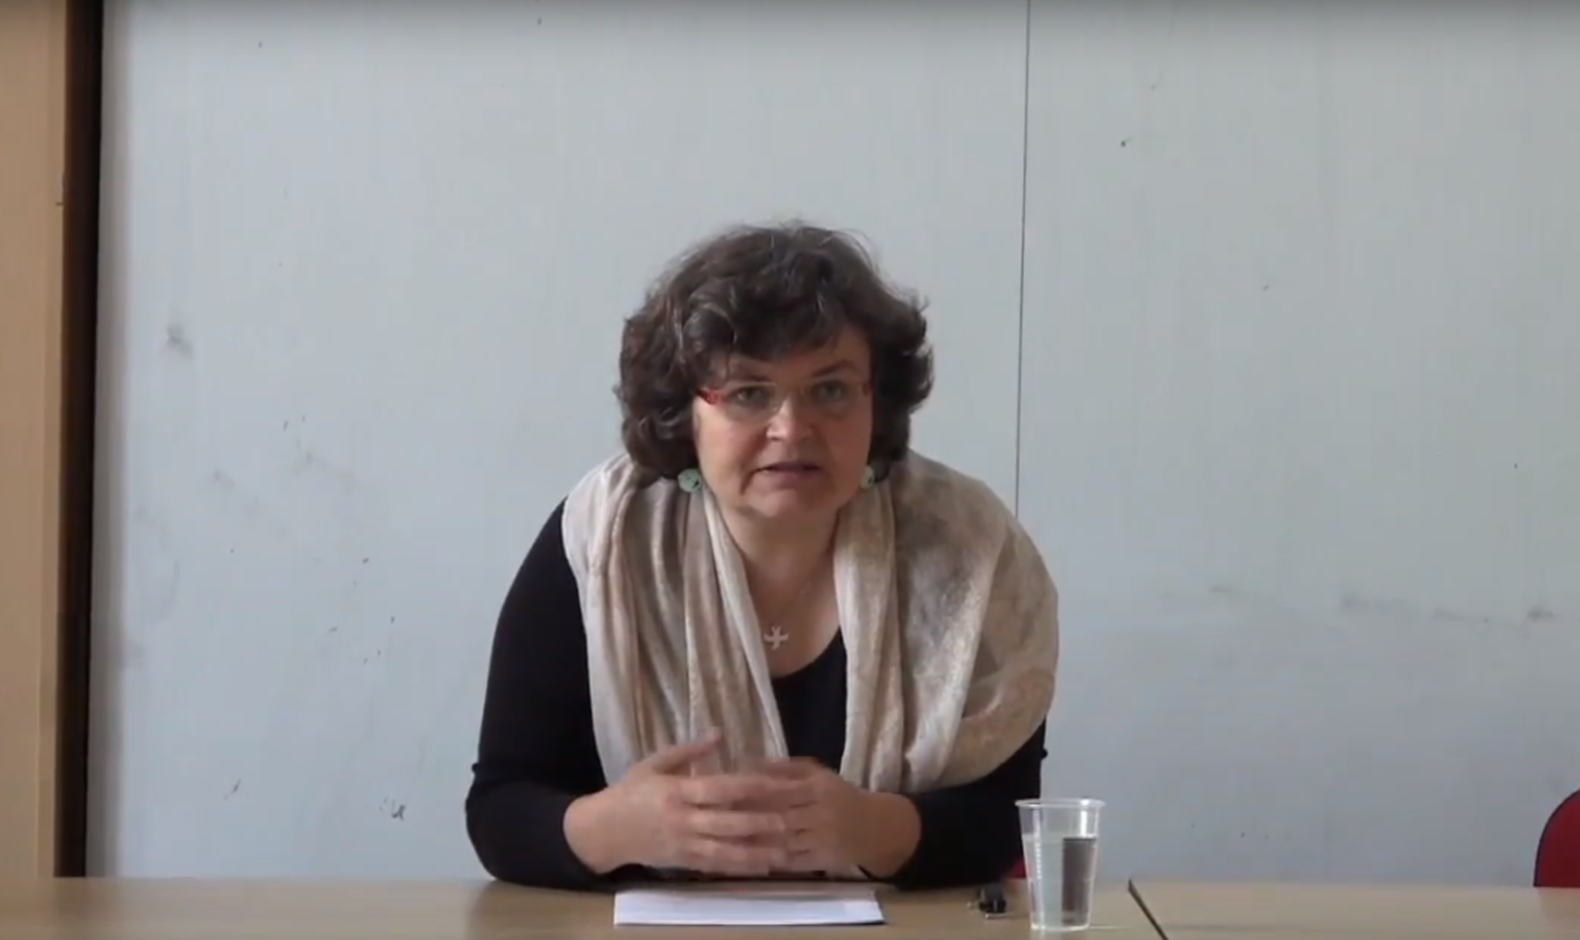 Sárka Grauová divulga e ensina a literatura brasileira na Universidade Carolina de Praga, uma das mais tradicionais da Europa, onde dirige o Departamento de Estudos Luso-brasileiros